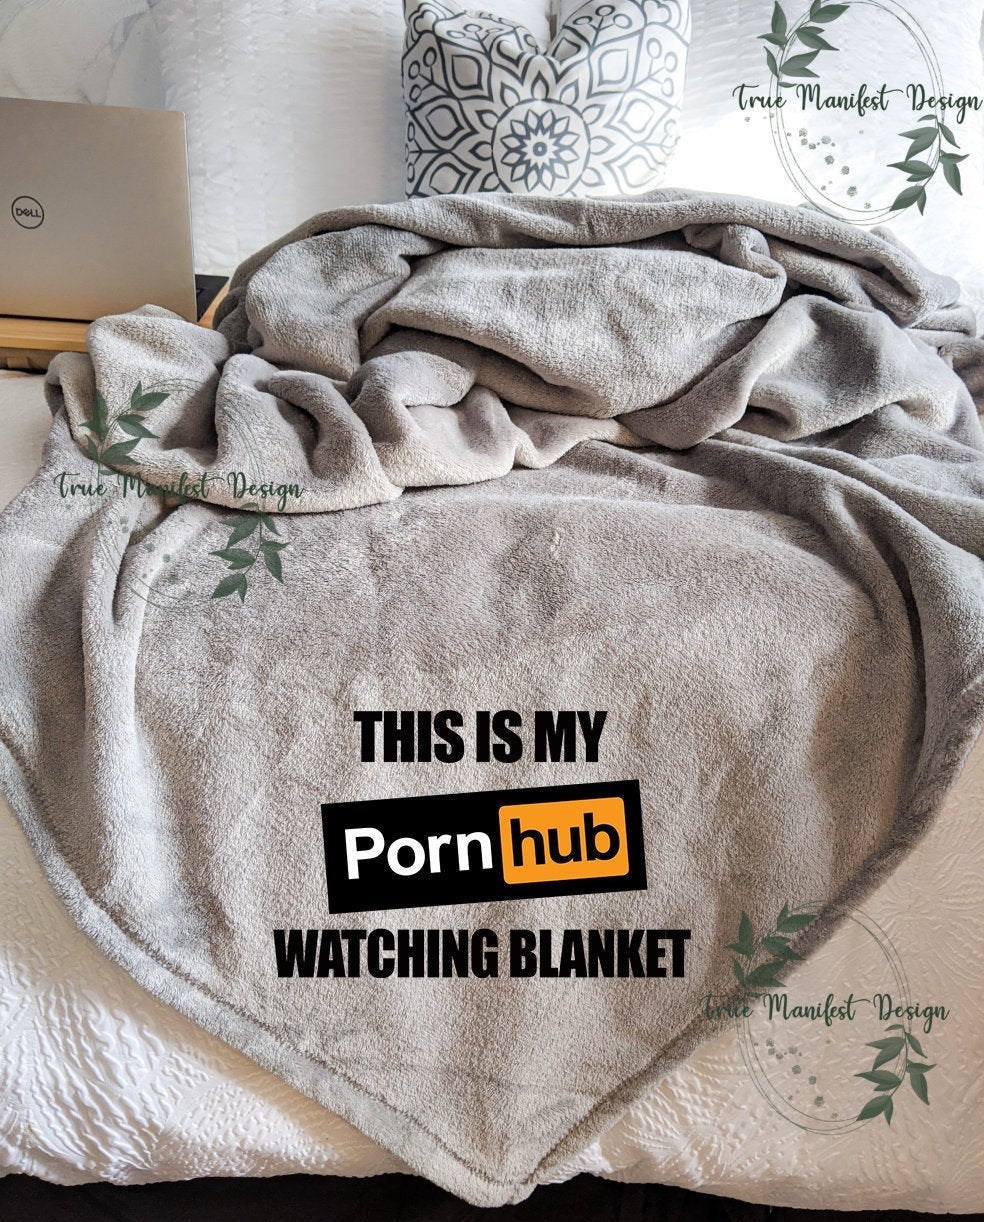 This is My Porn Hub Watching Blanket â€“ True Manifest Design